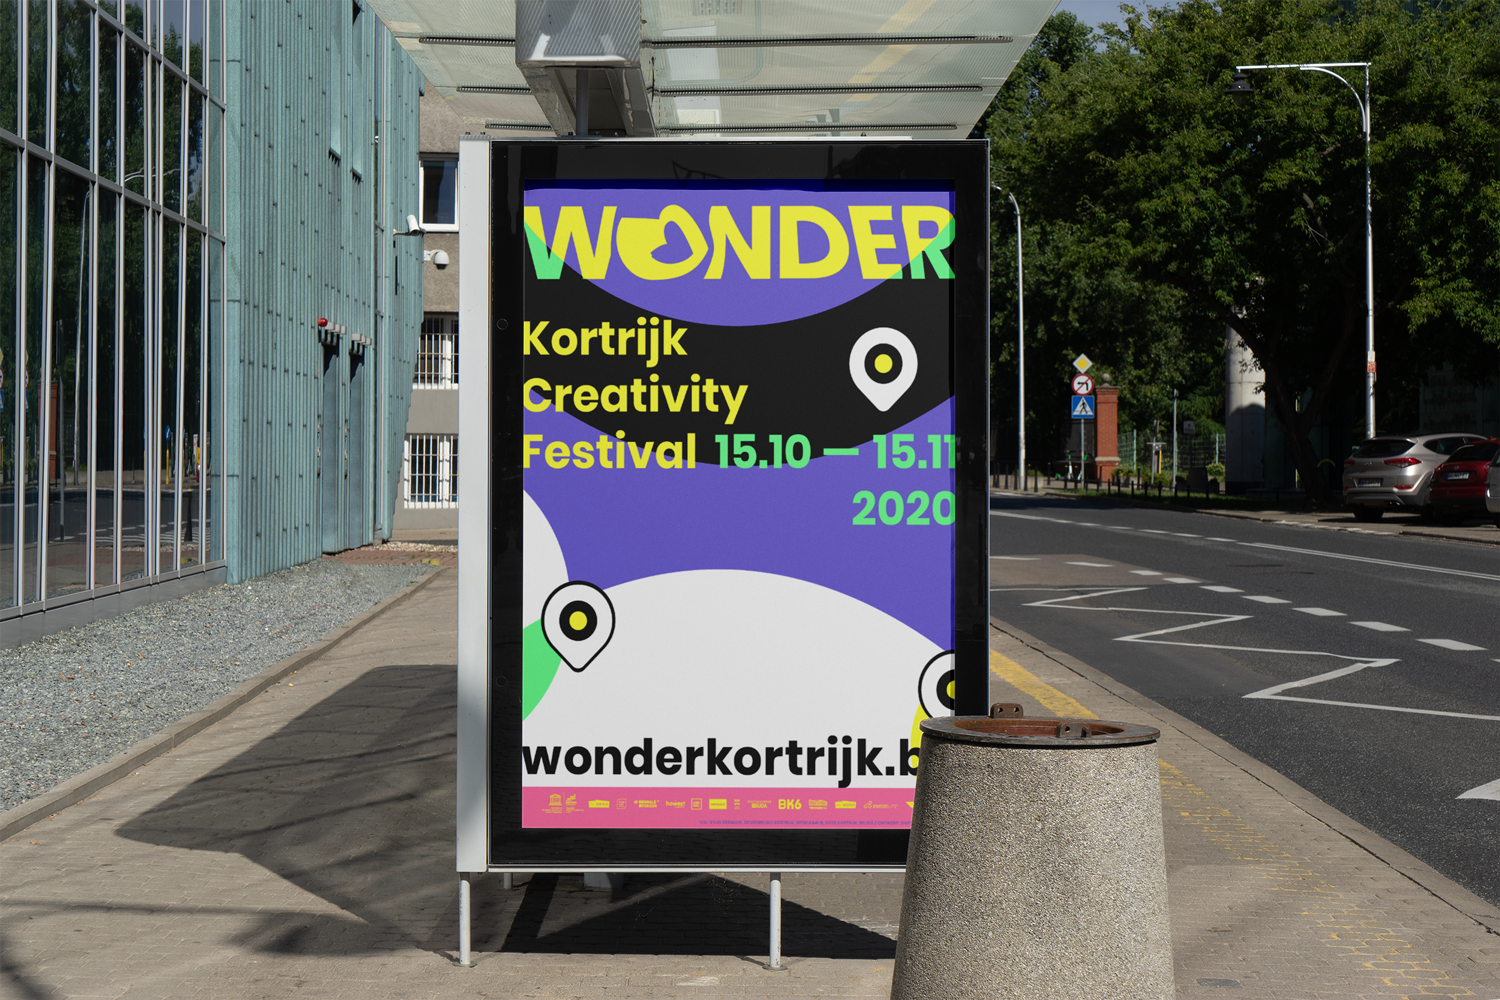 Wonder-Kortrijk-Creativity-Festival-identity-branding-Designregio-Kortrijk-Artist-Proof-Studio-Thomas-De-Ben-3.png